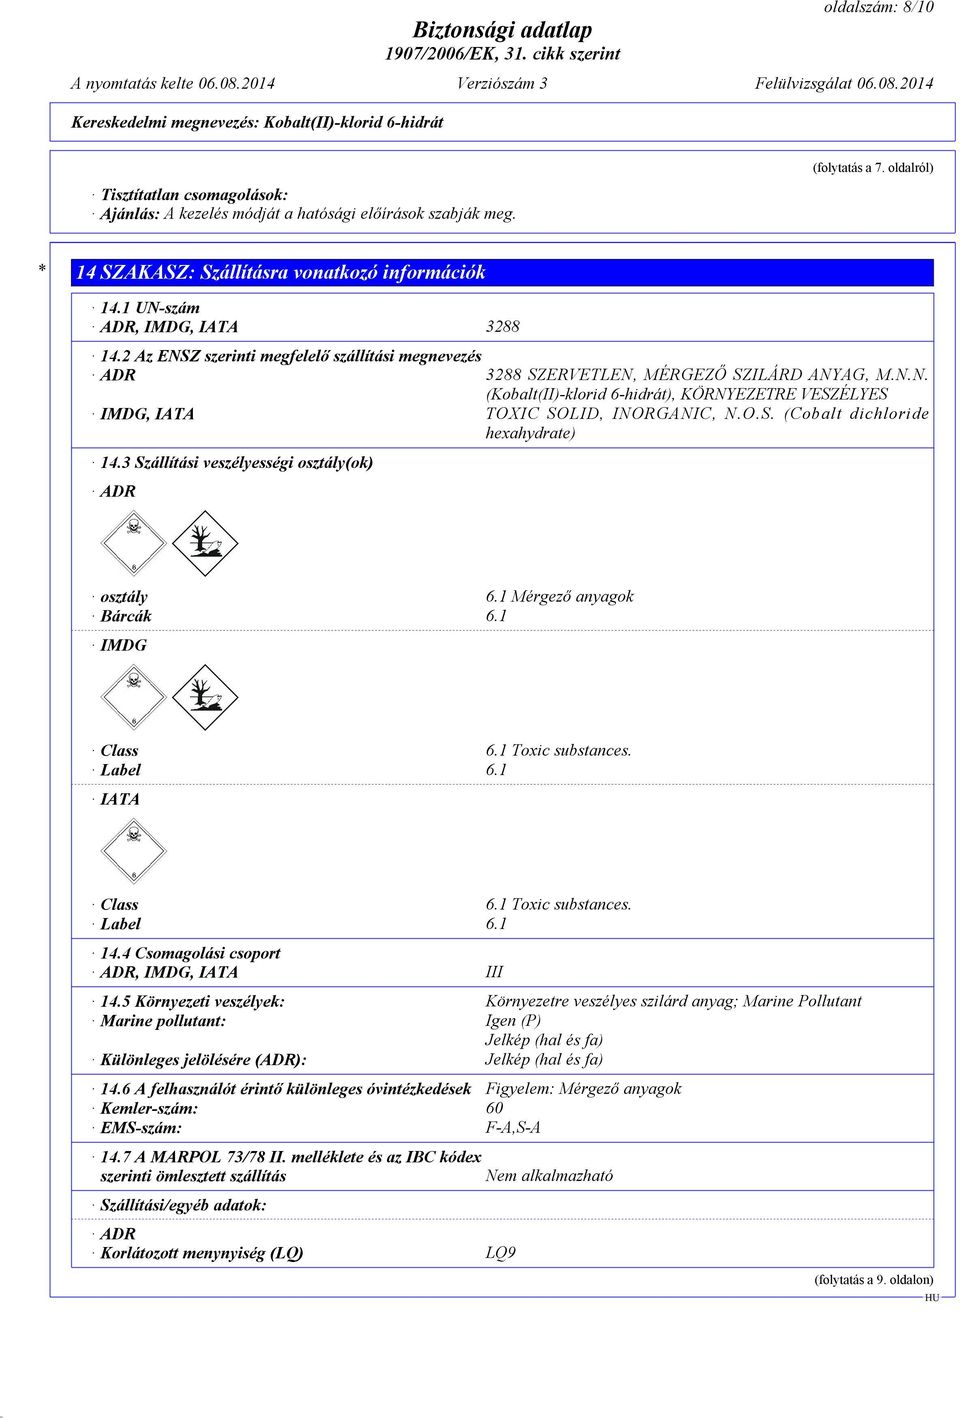 O.S. (Cobalt dichloride hexahydrate) 14.3 Szállítási veszélyességi osztály(ok) ADR osztály 6.1 Mérgező anyagok Bárcák 6.1 IMDG Class 6.1 Toxic substances. Label 6.1 IATA Class 6.1 Toxic substances. Label 6.1 14.